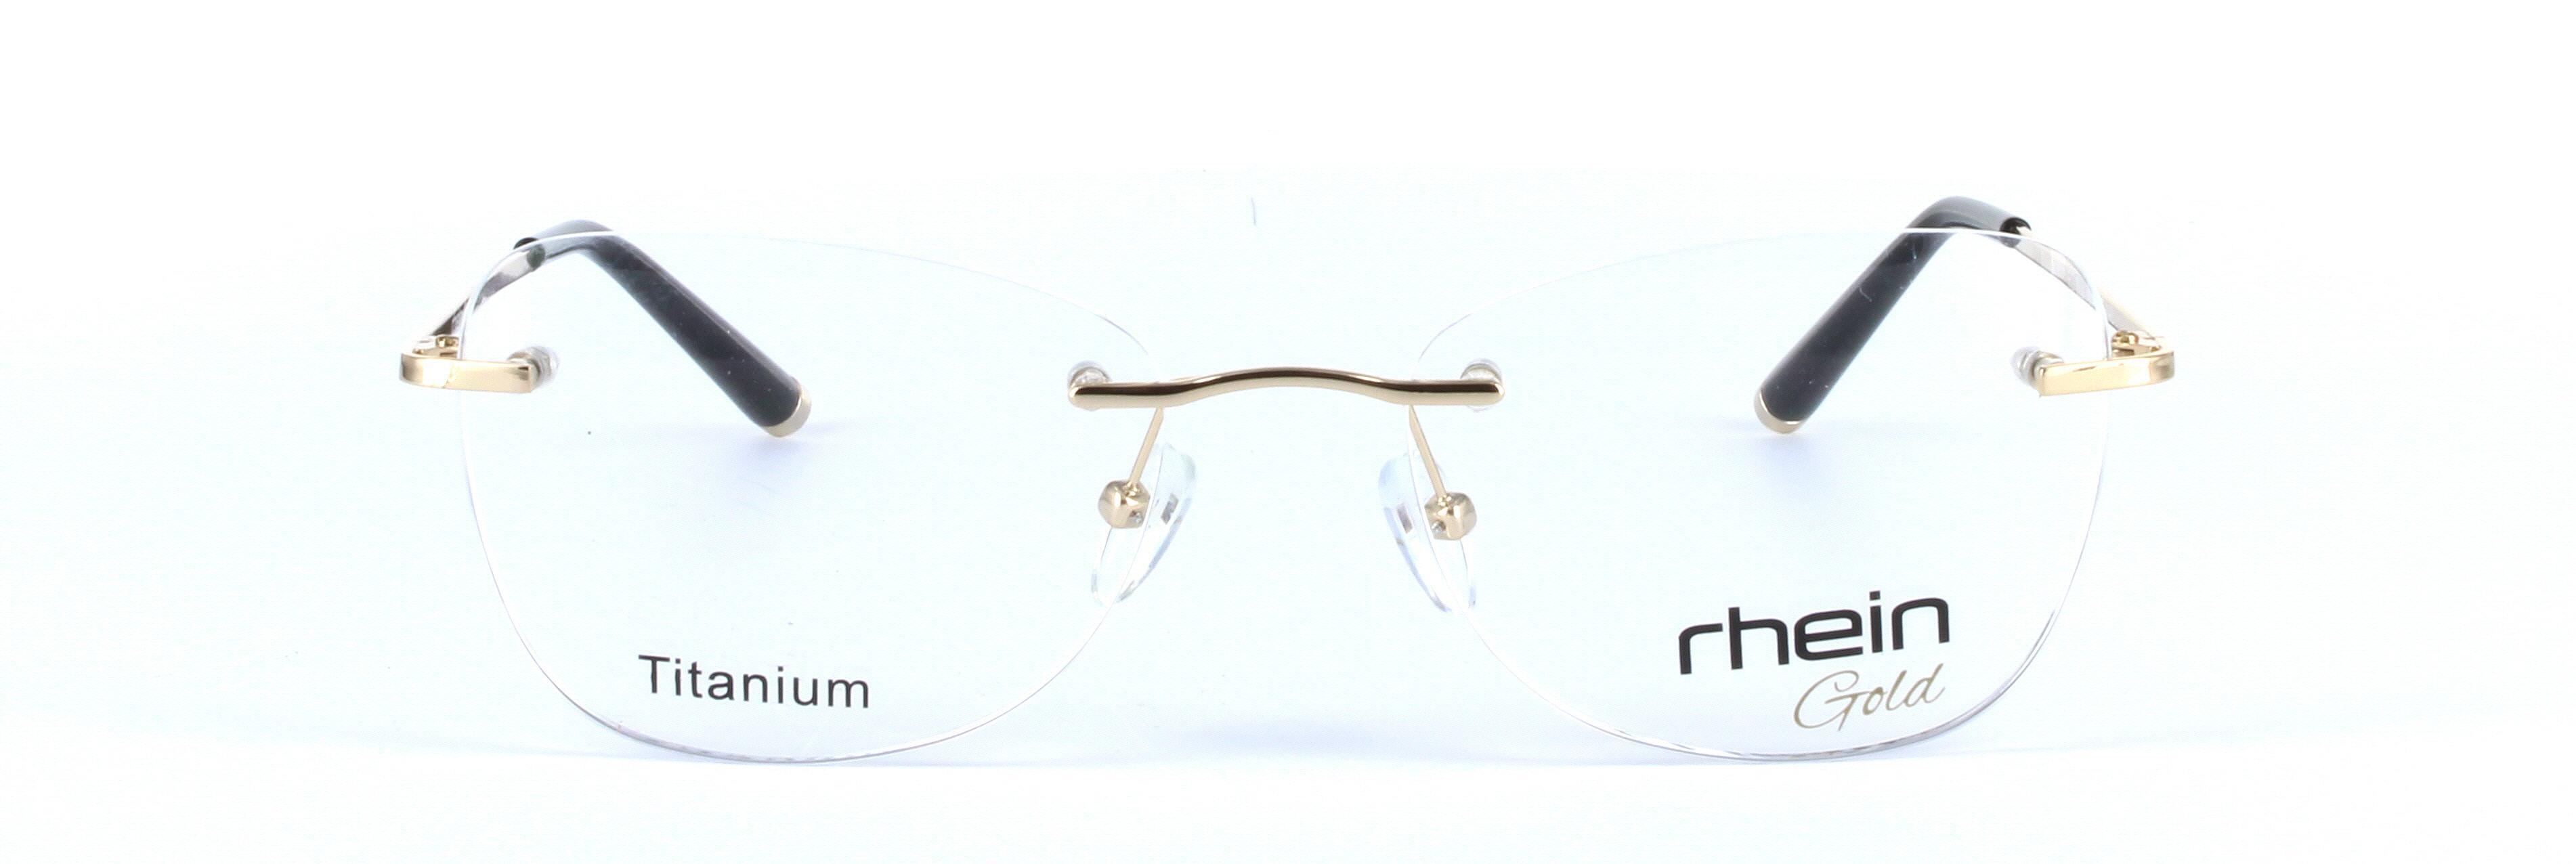 Hope Titanium Gold Rimless Rectangular Titanium Glasses - Image View 5